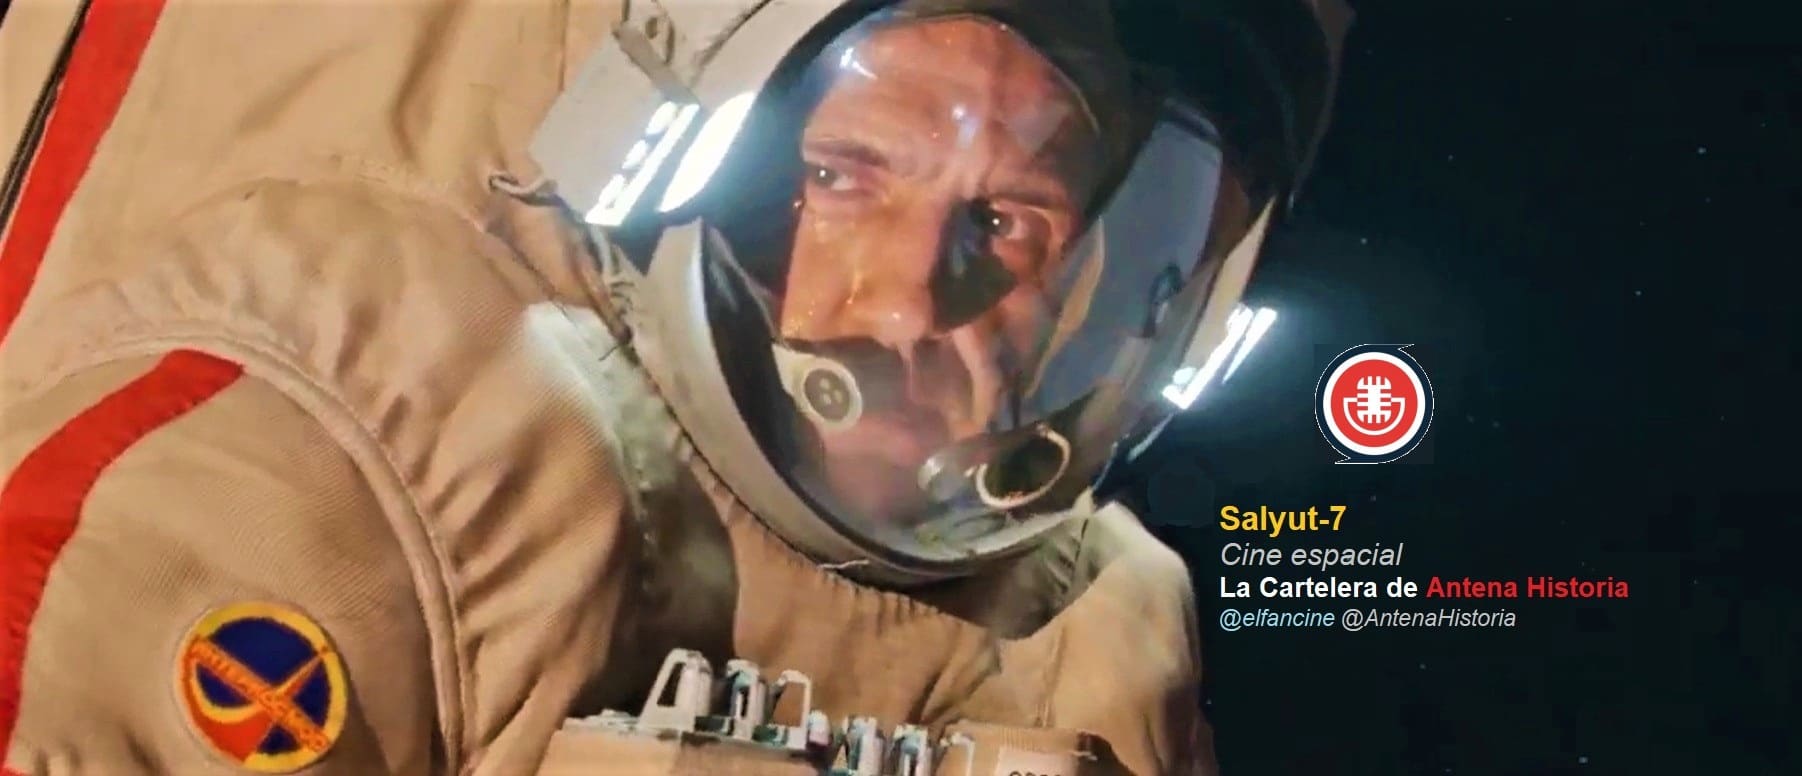 Салют-7 - Salyut 7 - Cosmonautas - Carrera Espacial - Guerra fría - el fancine - Antena Historia - Cine espacial - Podcast de cine - Antena Historia